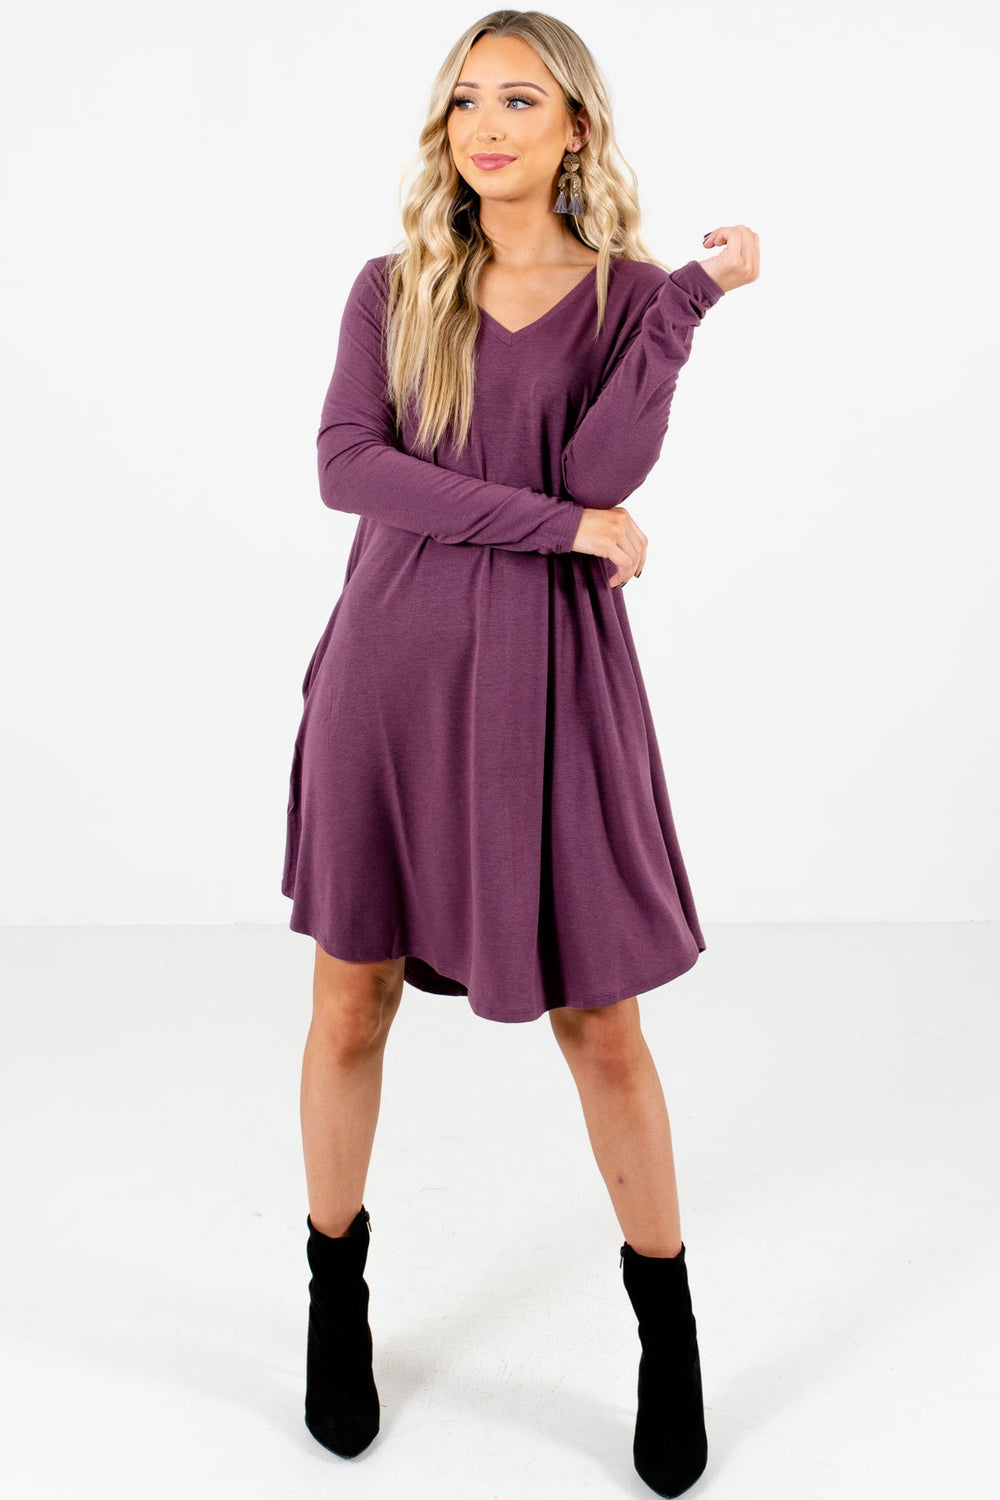 Chase Your Dreams Purple Mini Dress | Boutique Mini Dress - Bella Ella ...